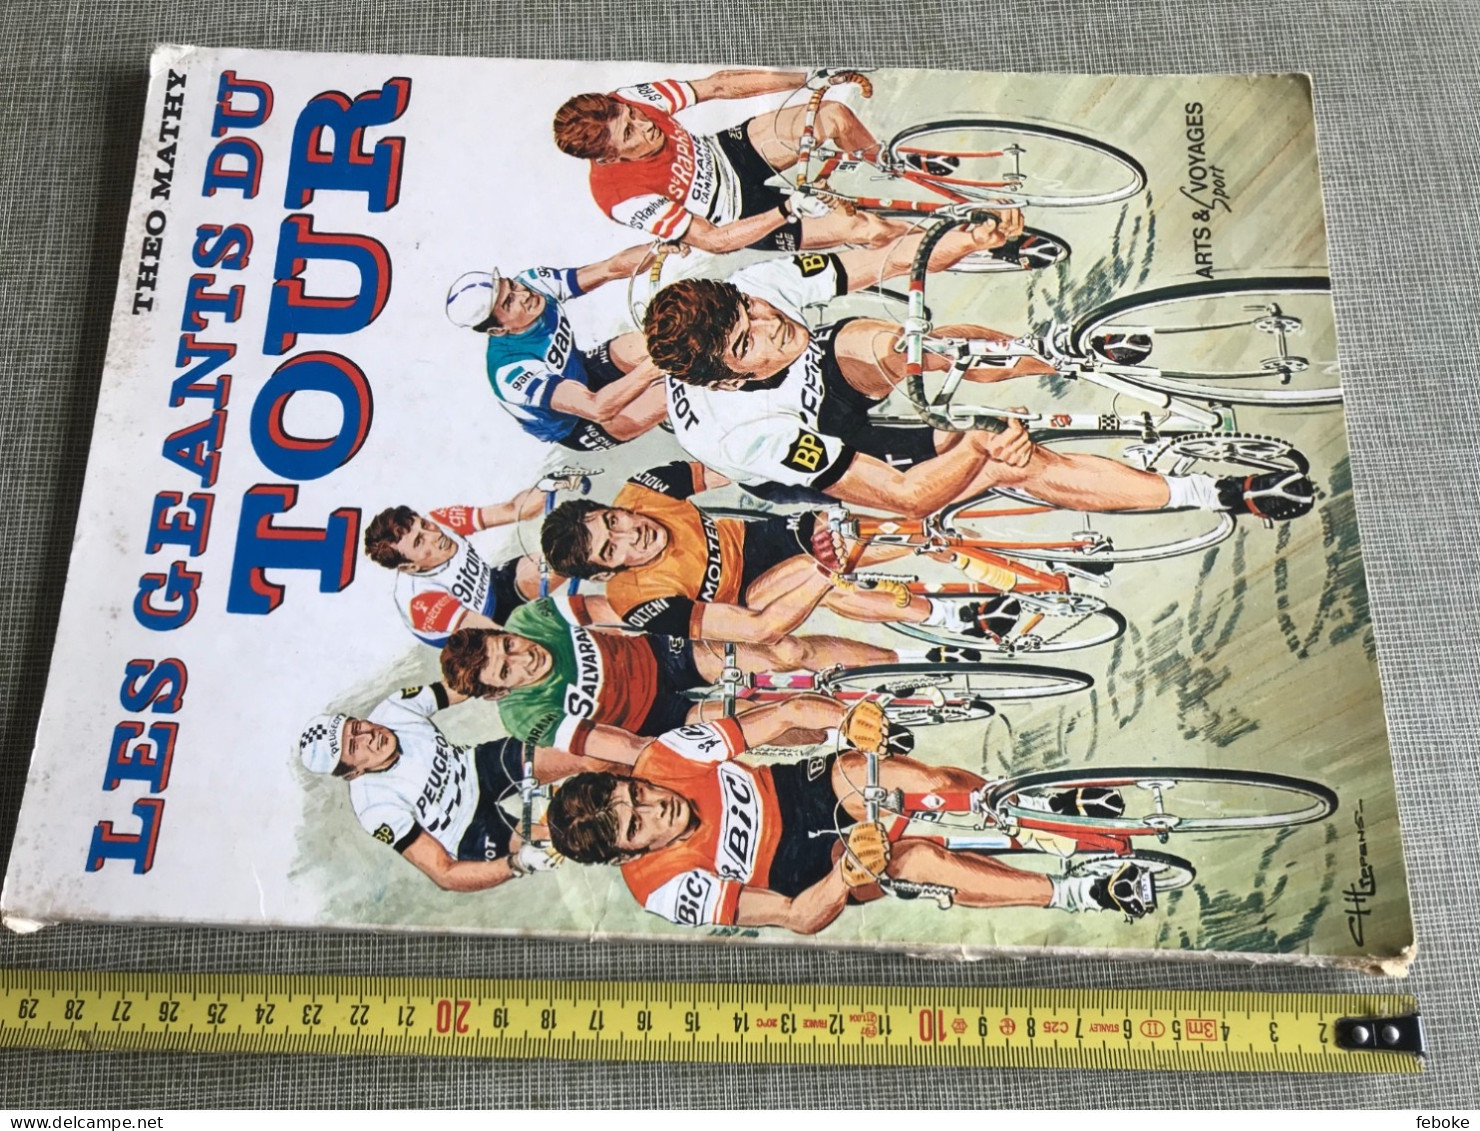 LES GÉANTS DU TOUR THÉO MATHY ARTS & VOYAGES SPORT 1976 CYCLISME VINTAGE - Deportes